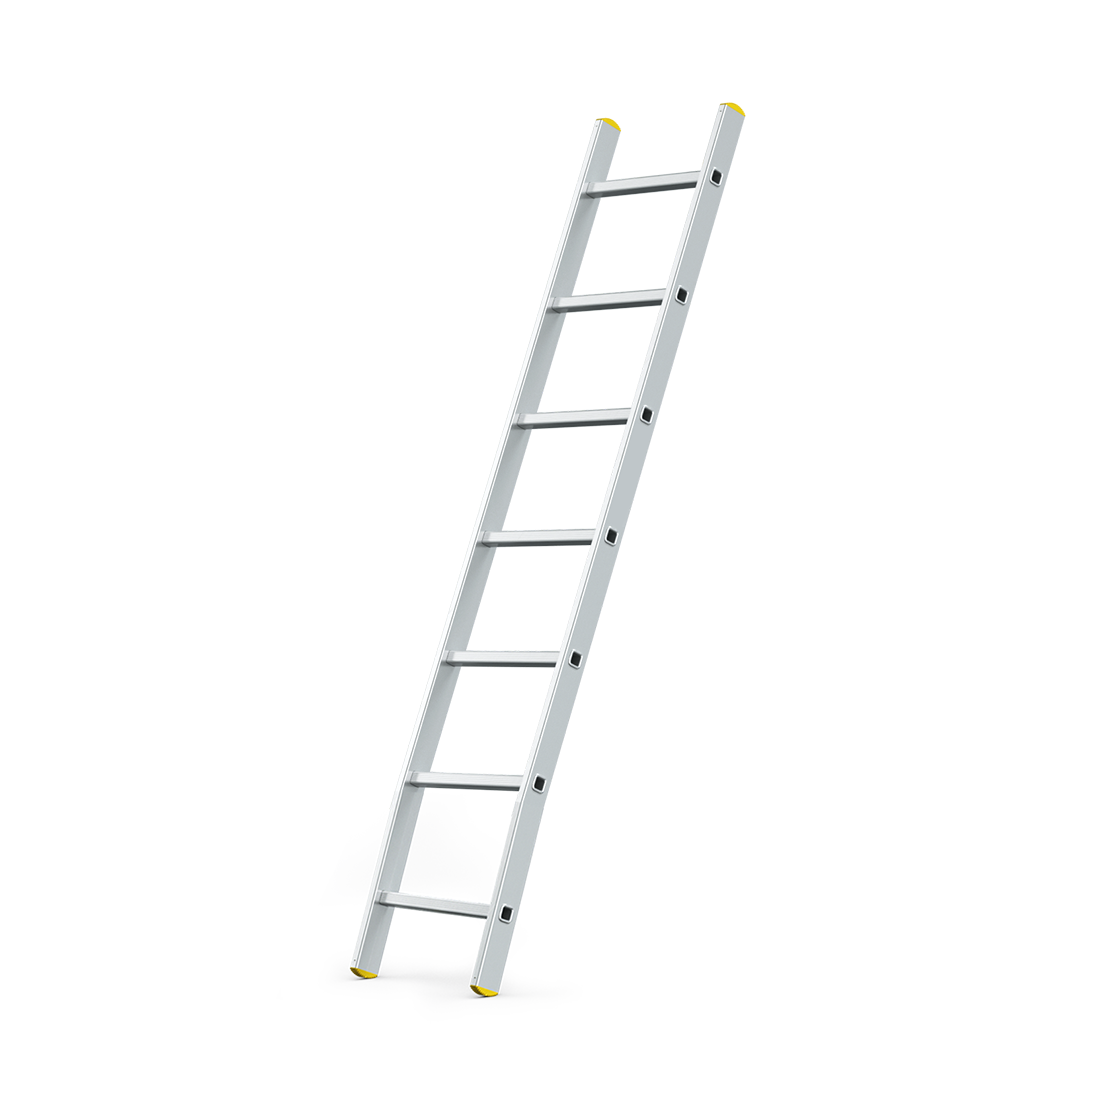 Escalera simple de aluminio Reach Line Pro tipo IA de 9.5 pies - 330 lbs. Capacidad de carga